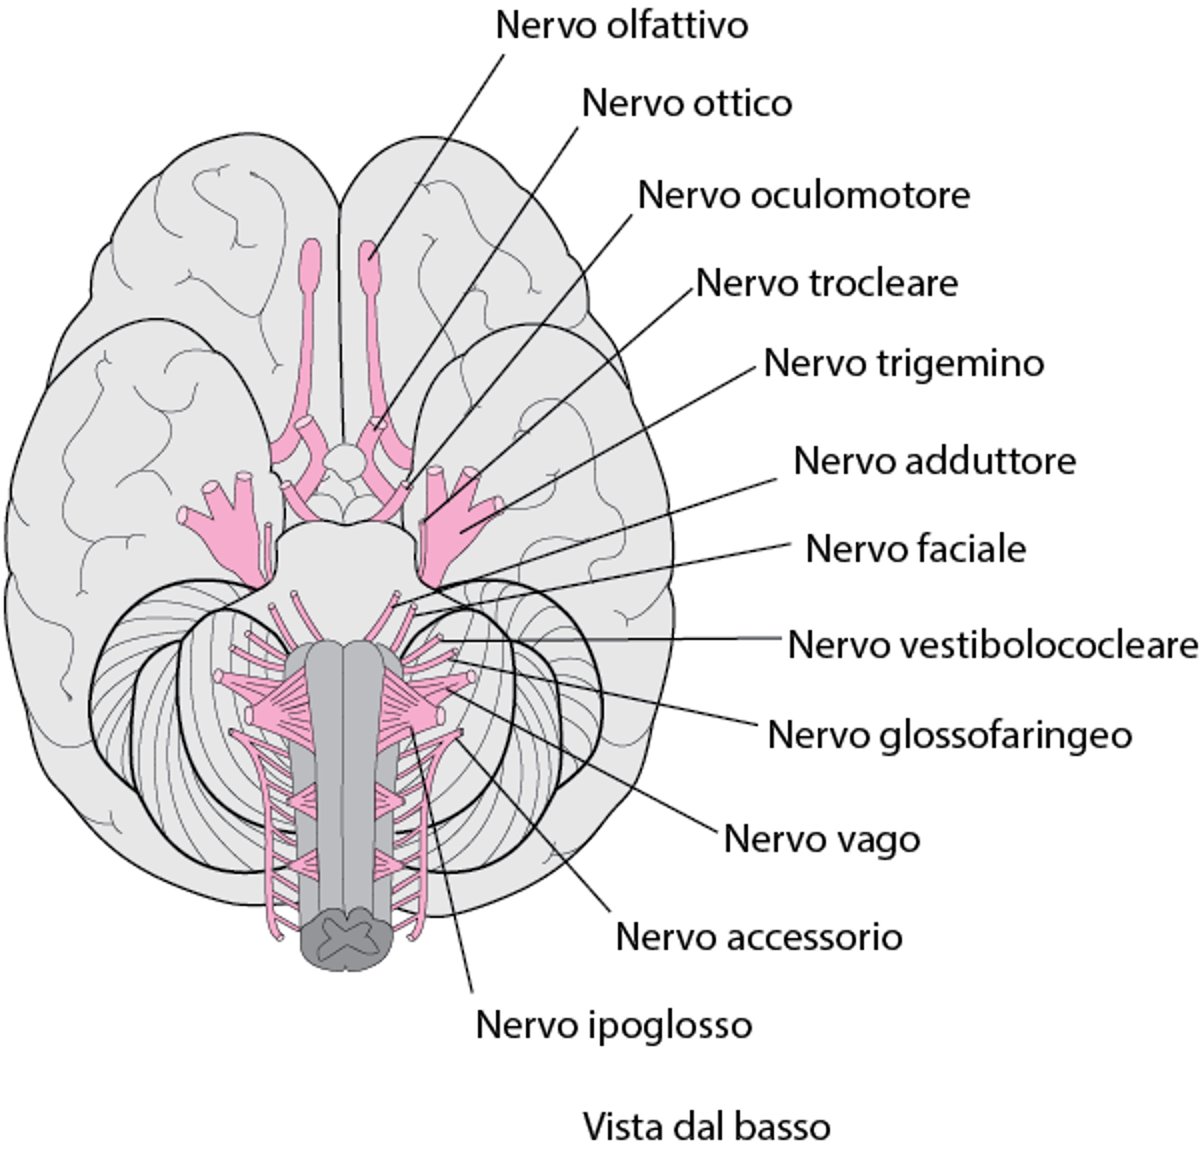 Schema dei nervi cranici